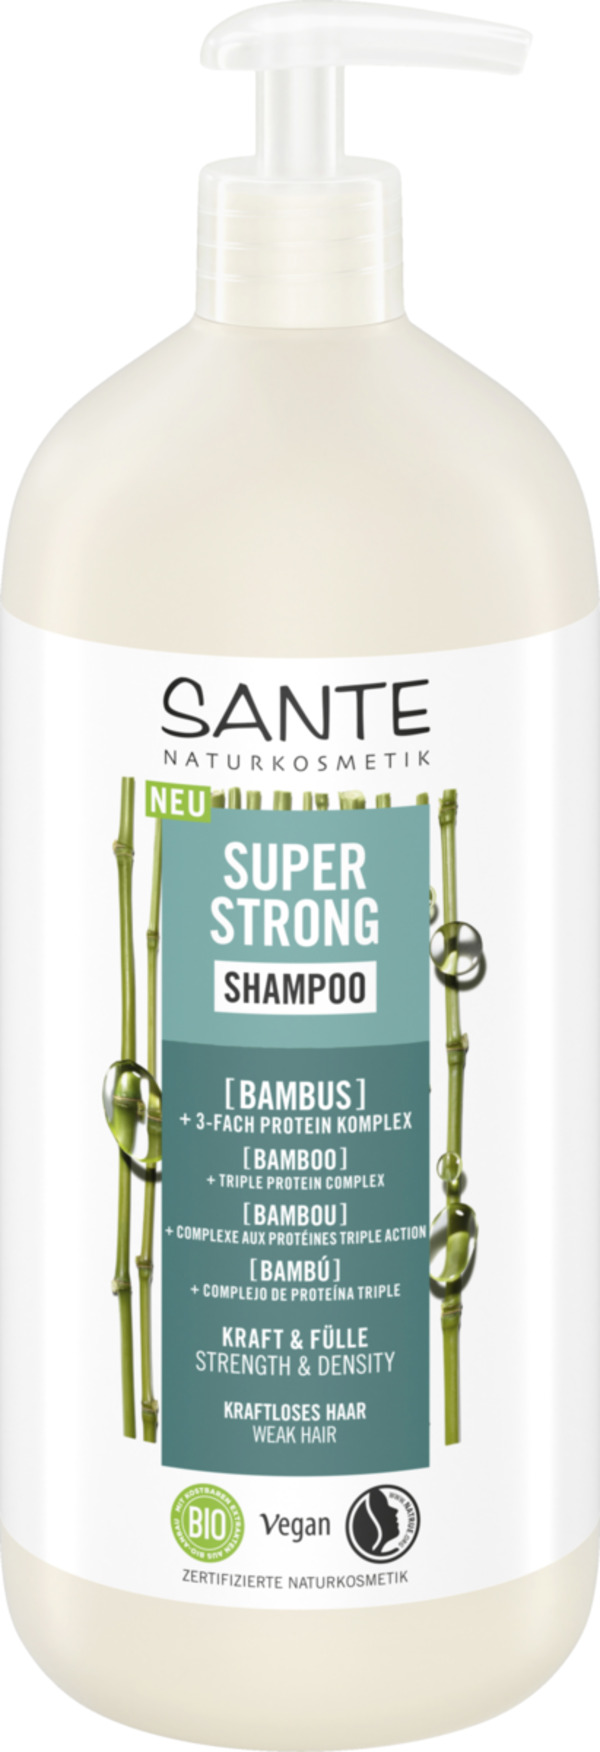 Bild 1 von Sante Super Strong Shampoo